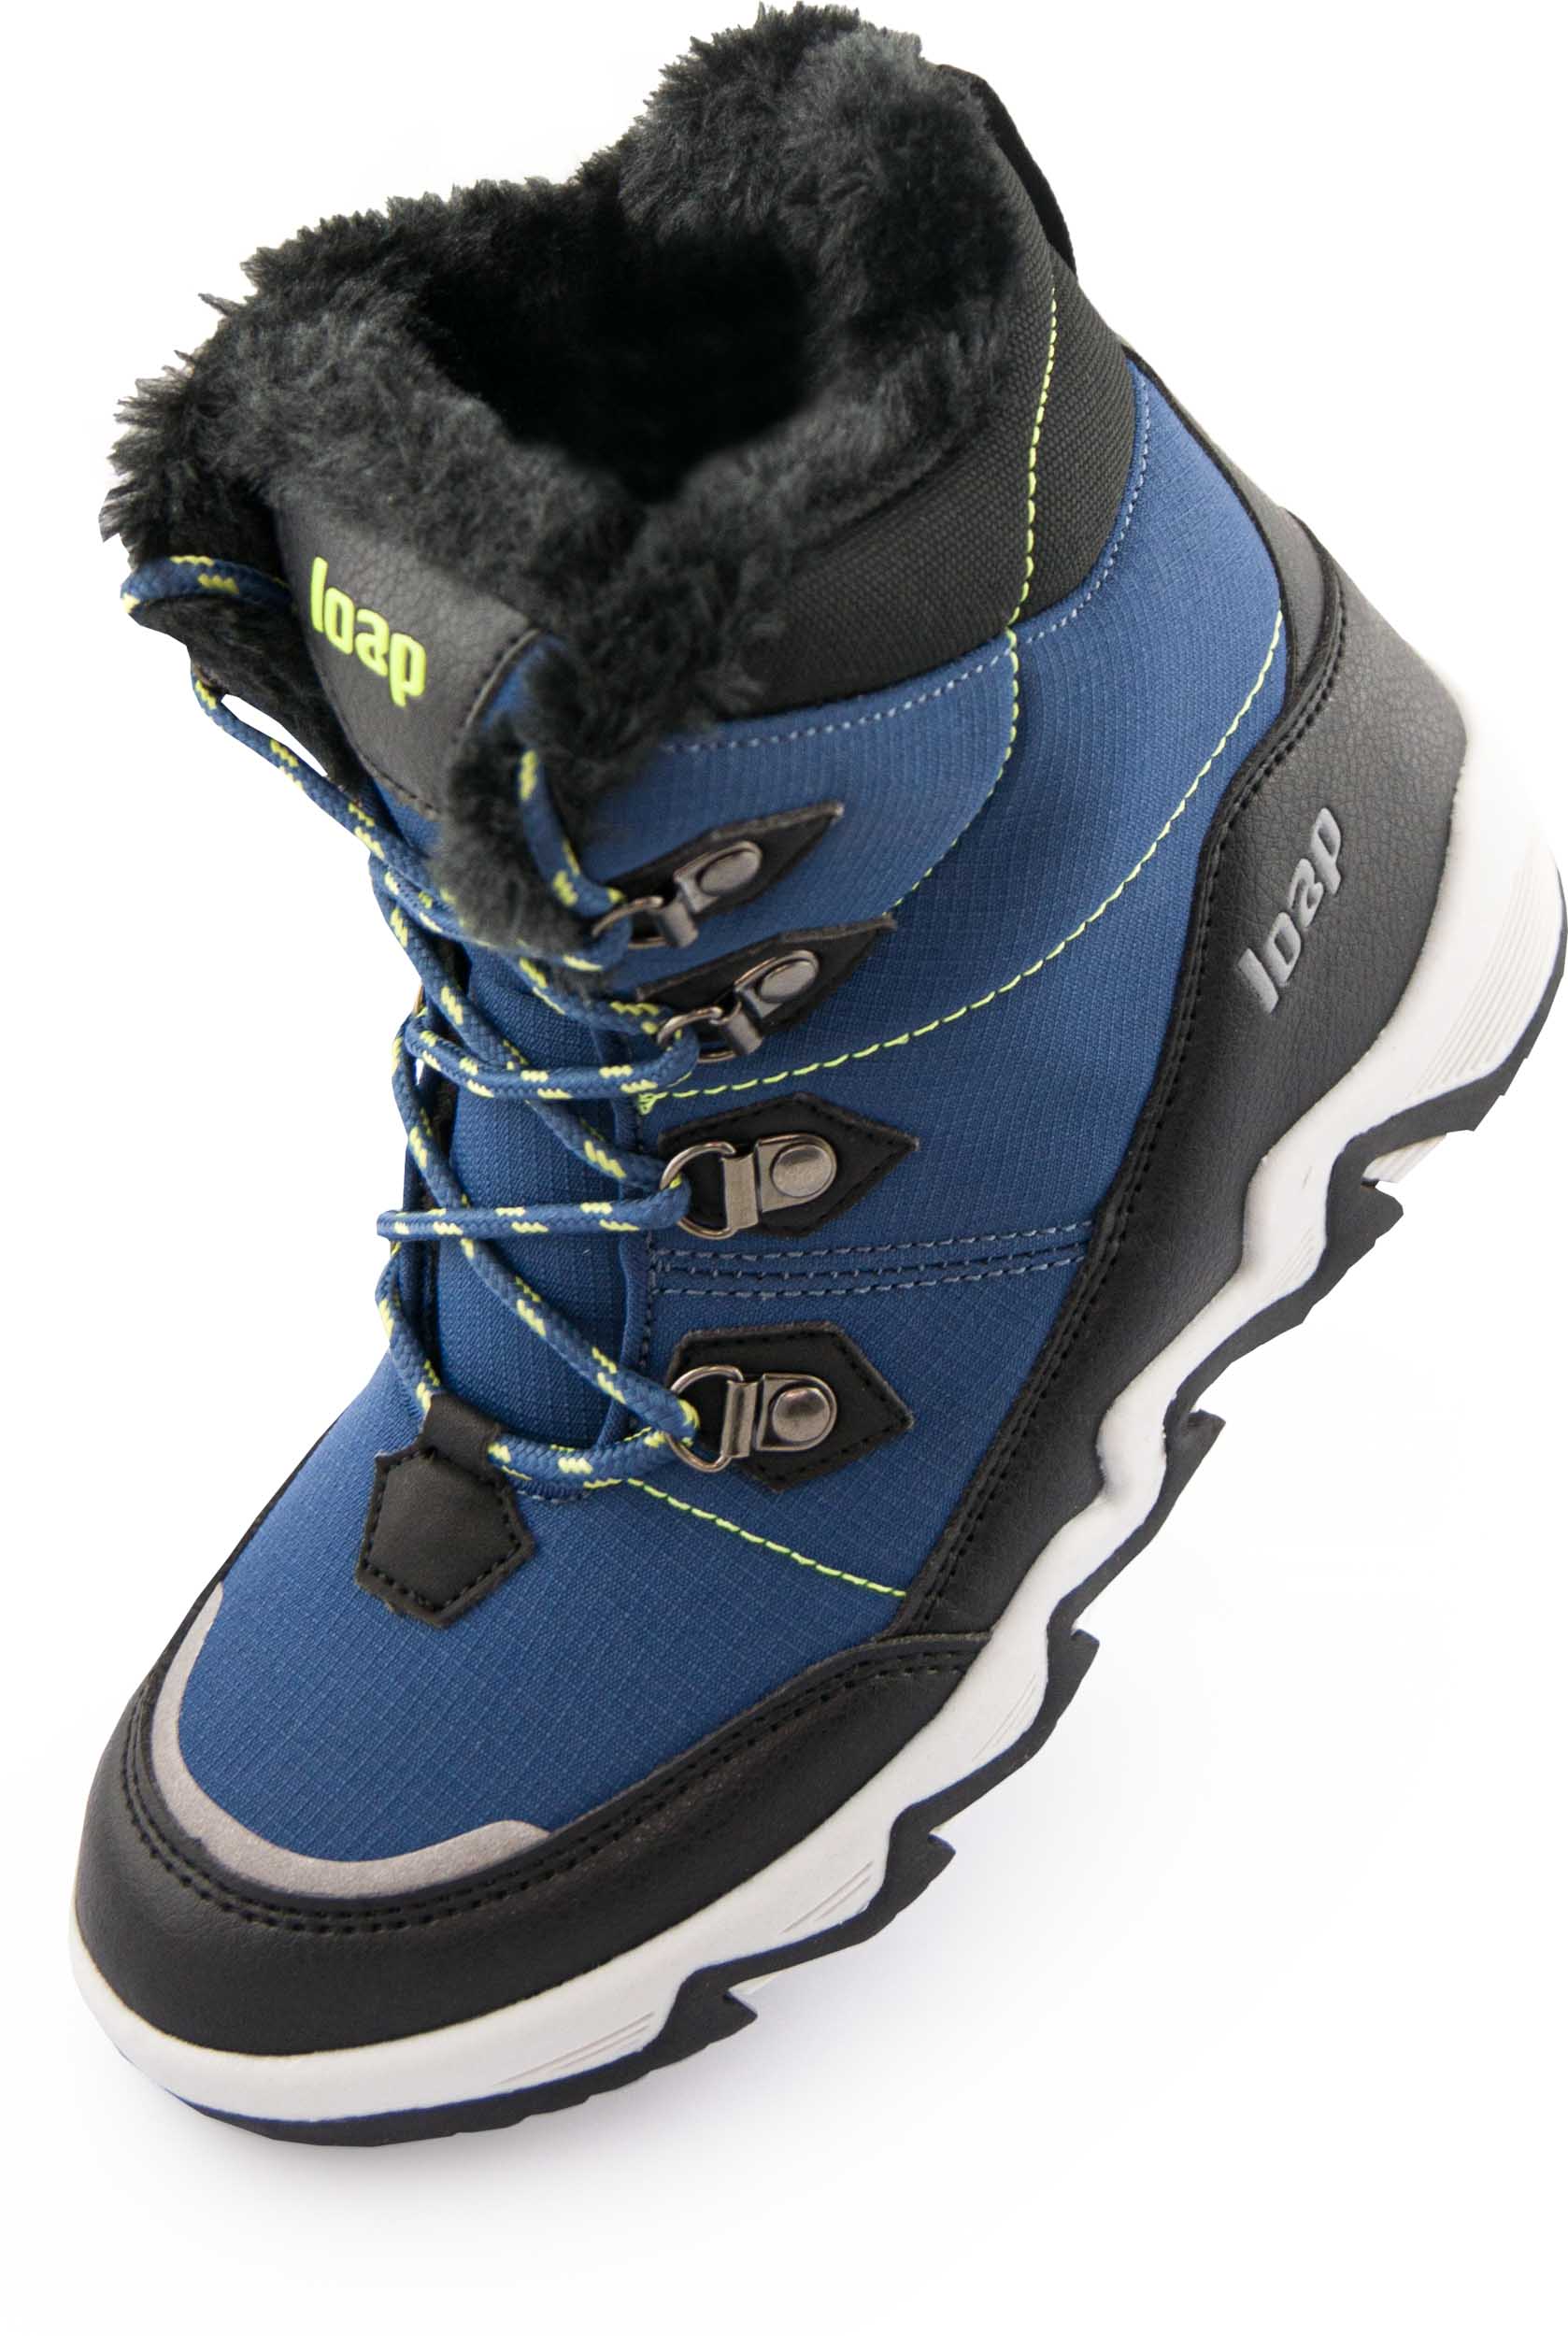 Dětské zimní boty LOAP LIMA blue|30